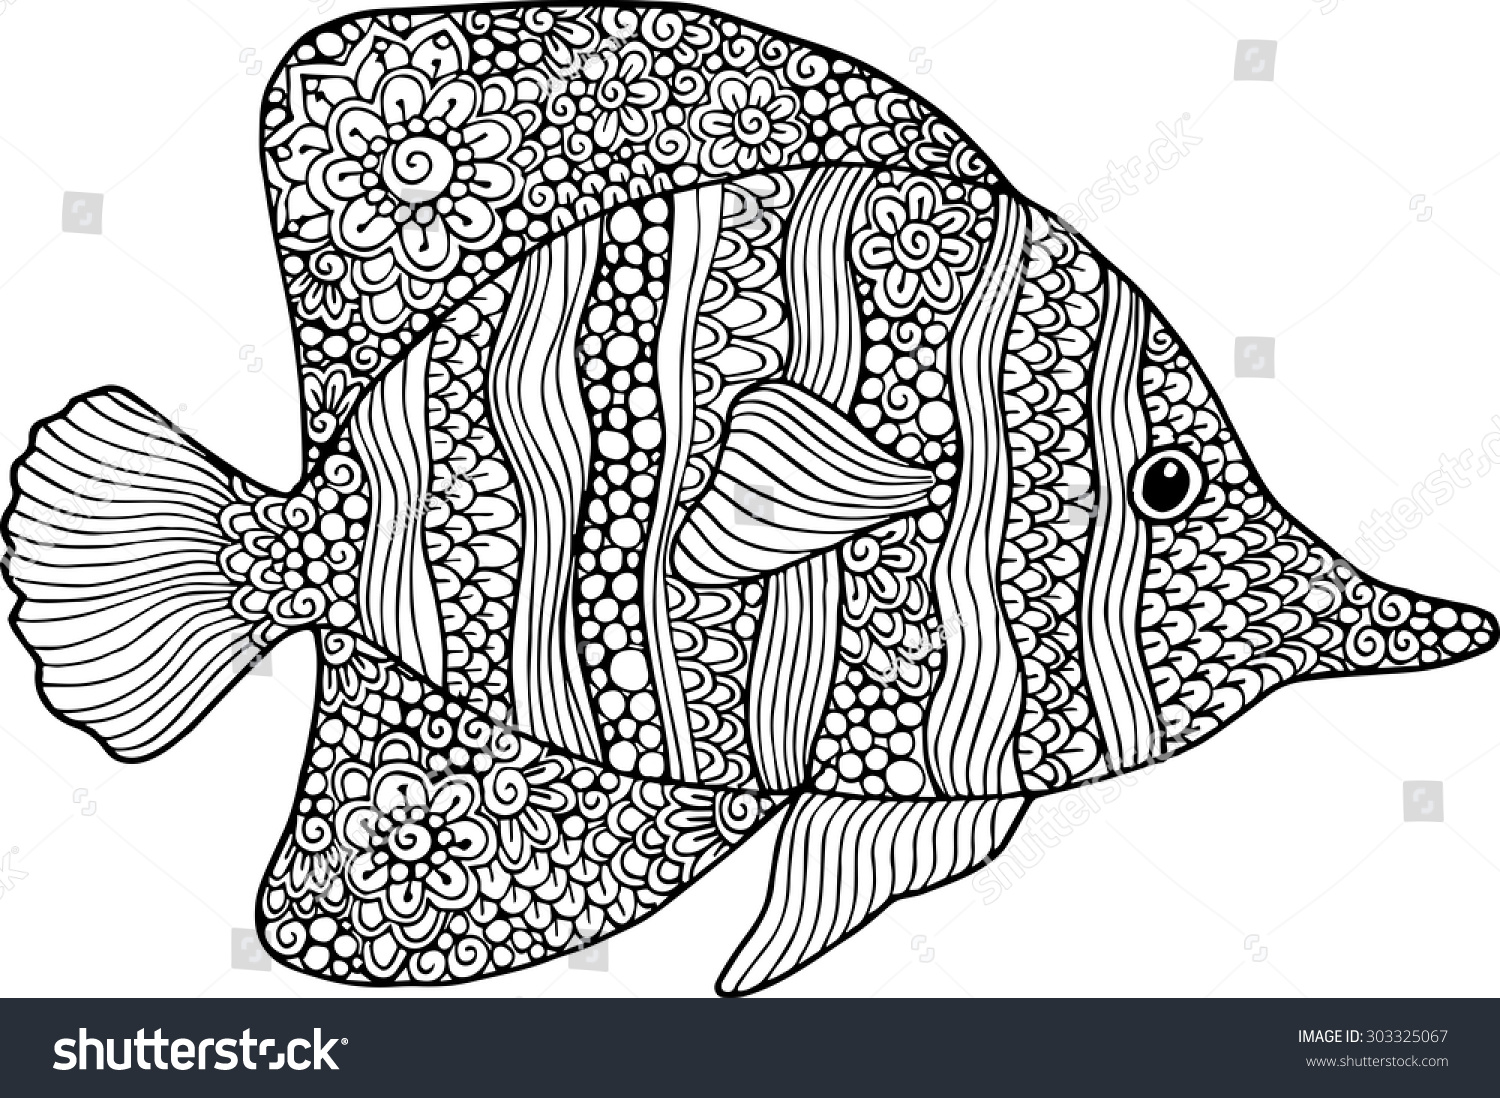 矢量手绘涂鸦大纲鱼插图。装饰鱼画与抽象的装